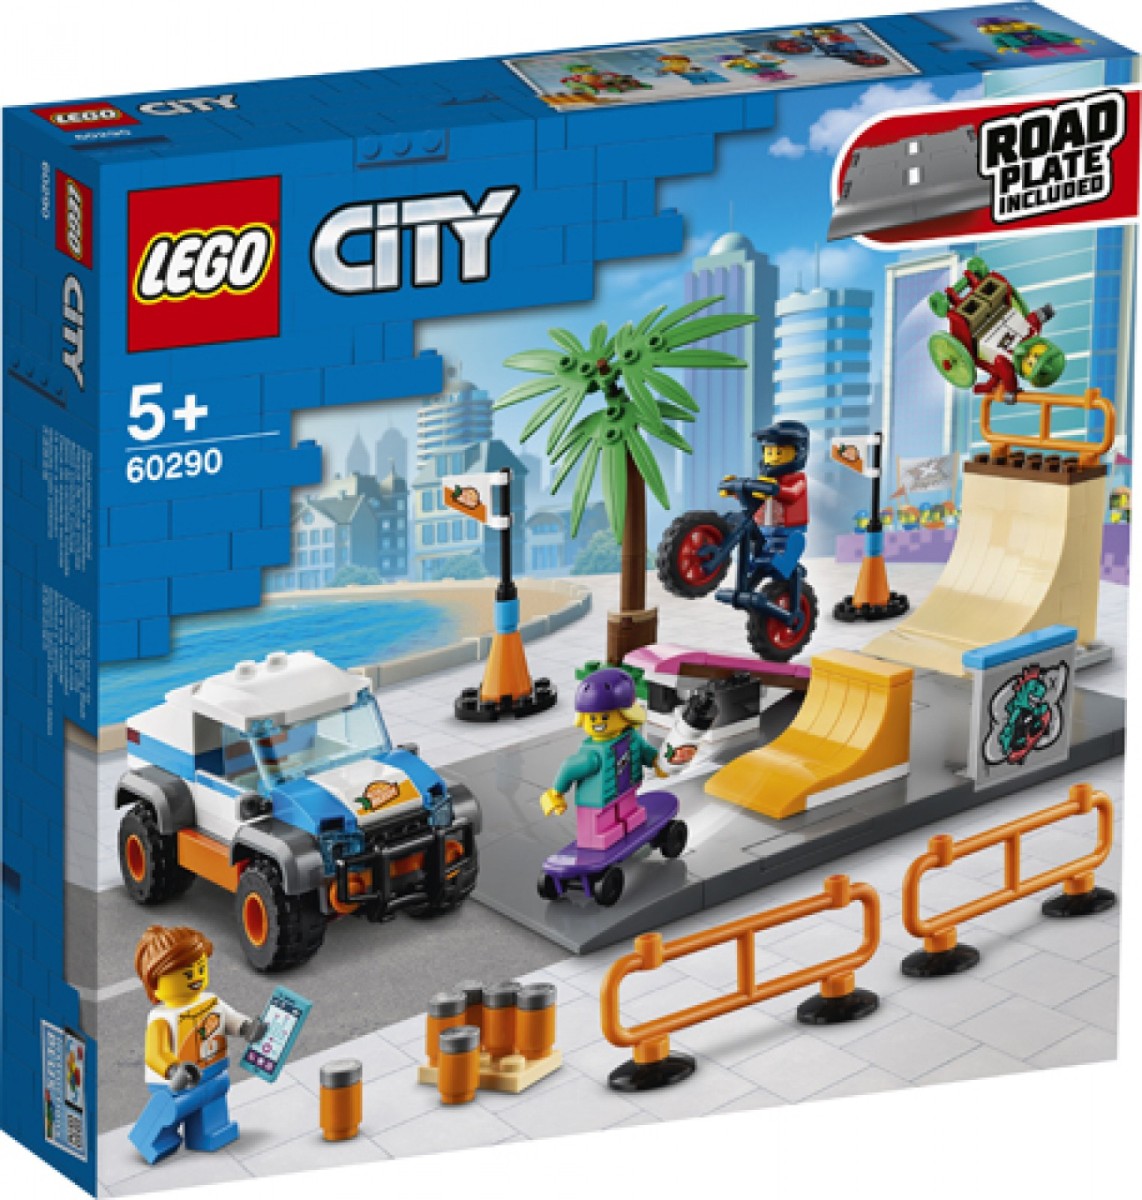 LEGO City Skate Park 60290 - Game On Toymaster Store